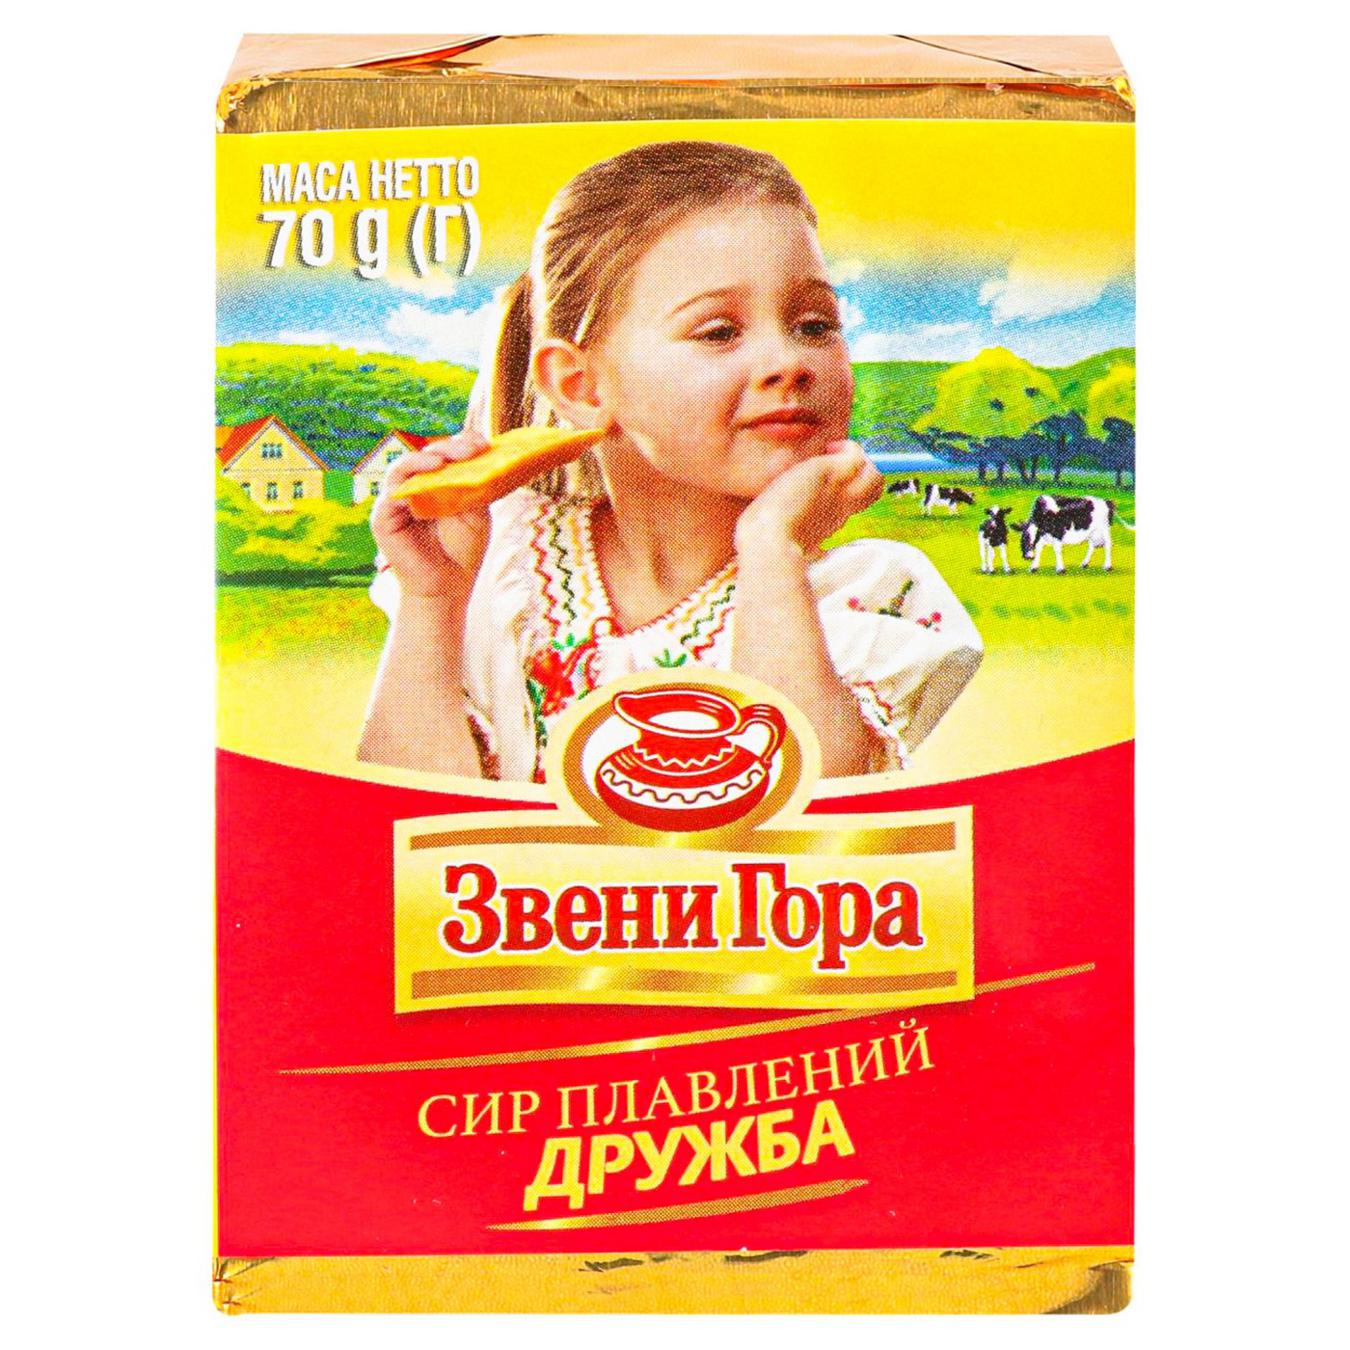 Zveny Hora Druzhba melted cheese portioned 50% 70g